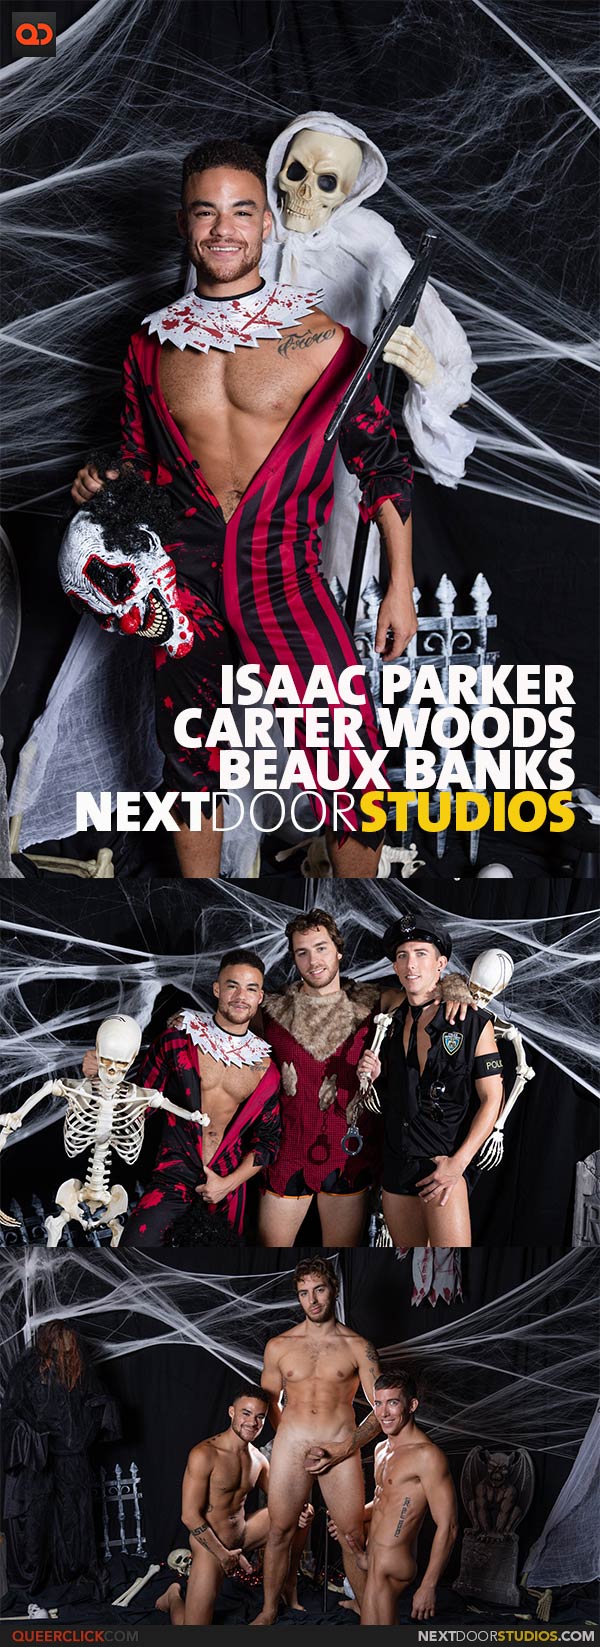 NextDoorStudios: Carter Woods, Beaux Banks and Isaac Parker